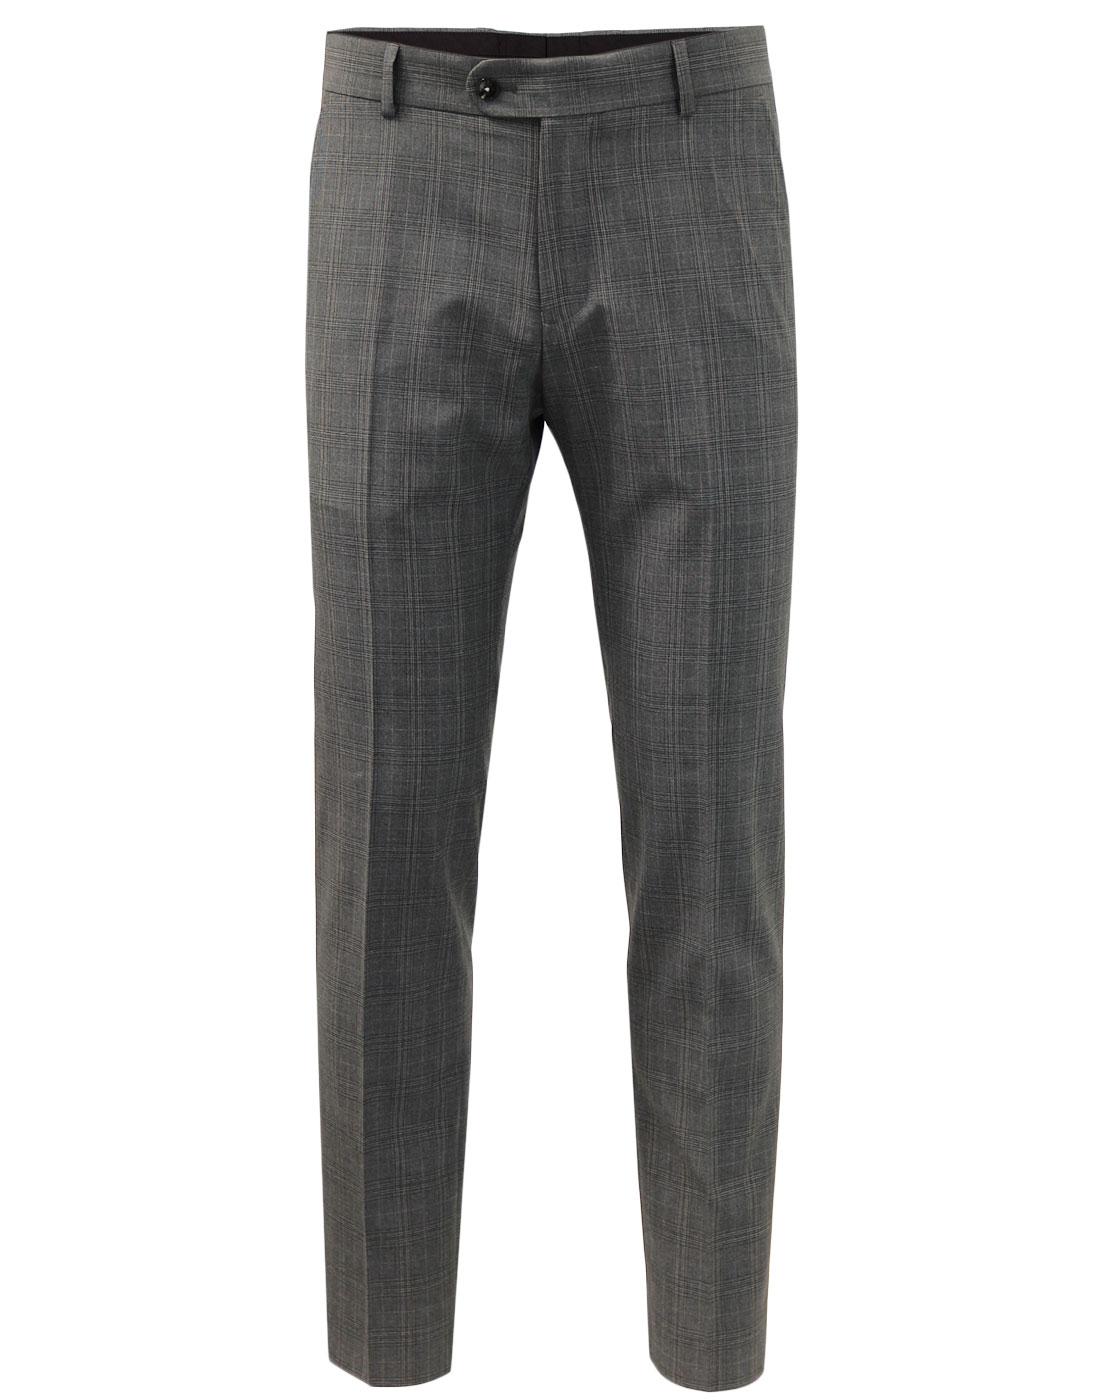 ANTIQUE ROGUE 1960s Mod POW Check Suit Trousers Grey